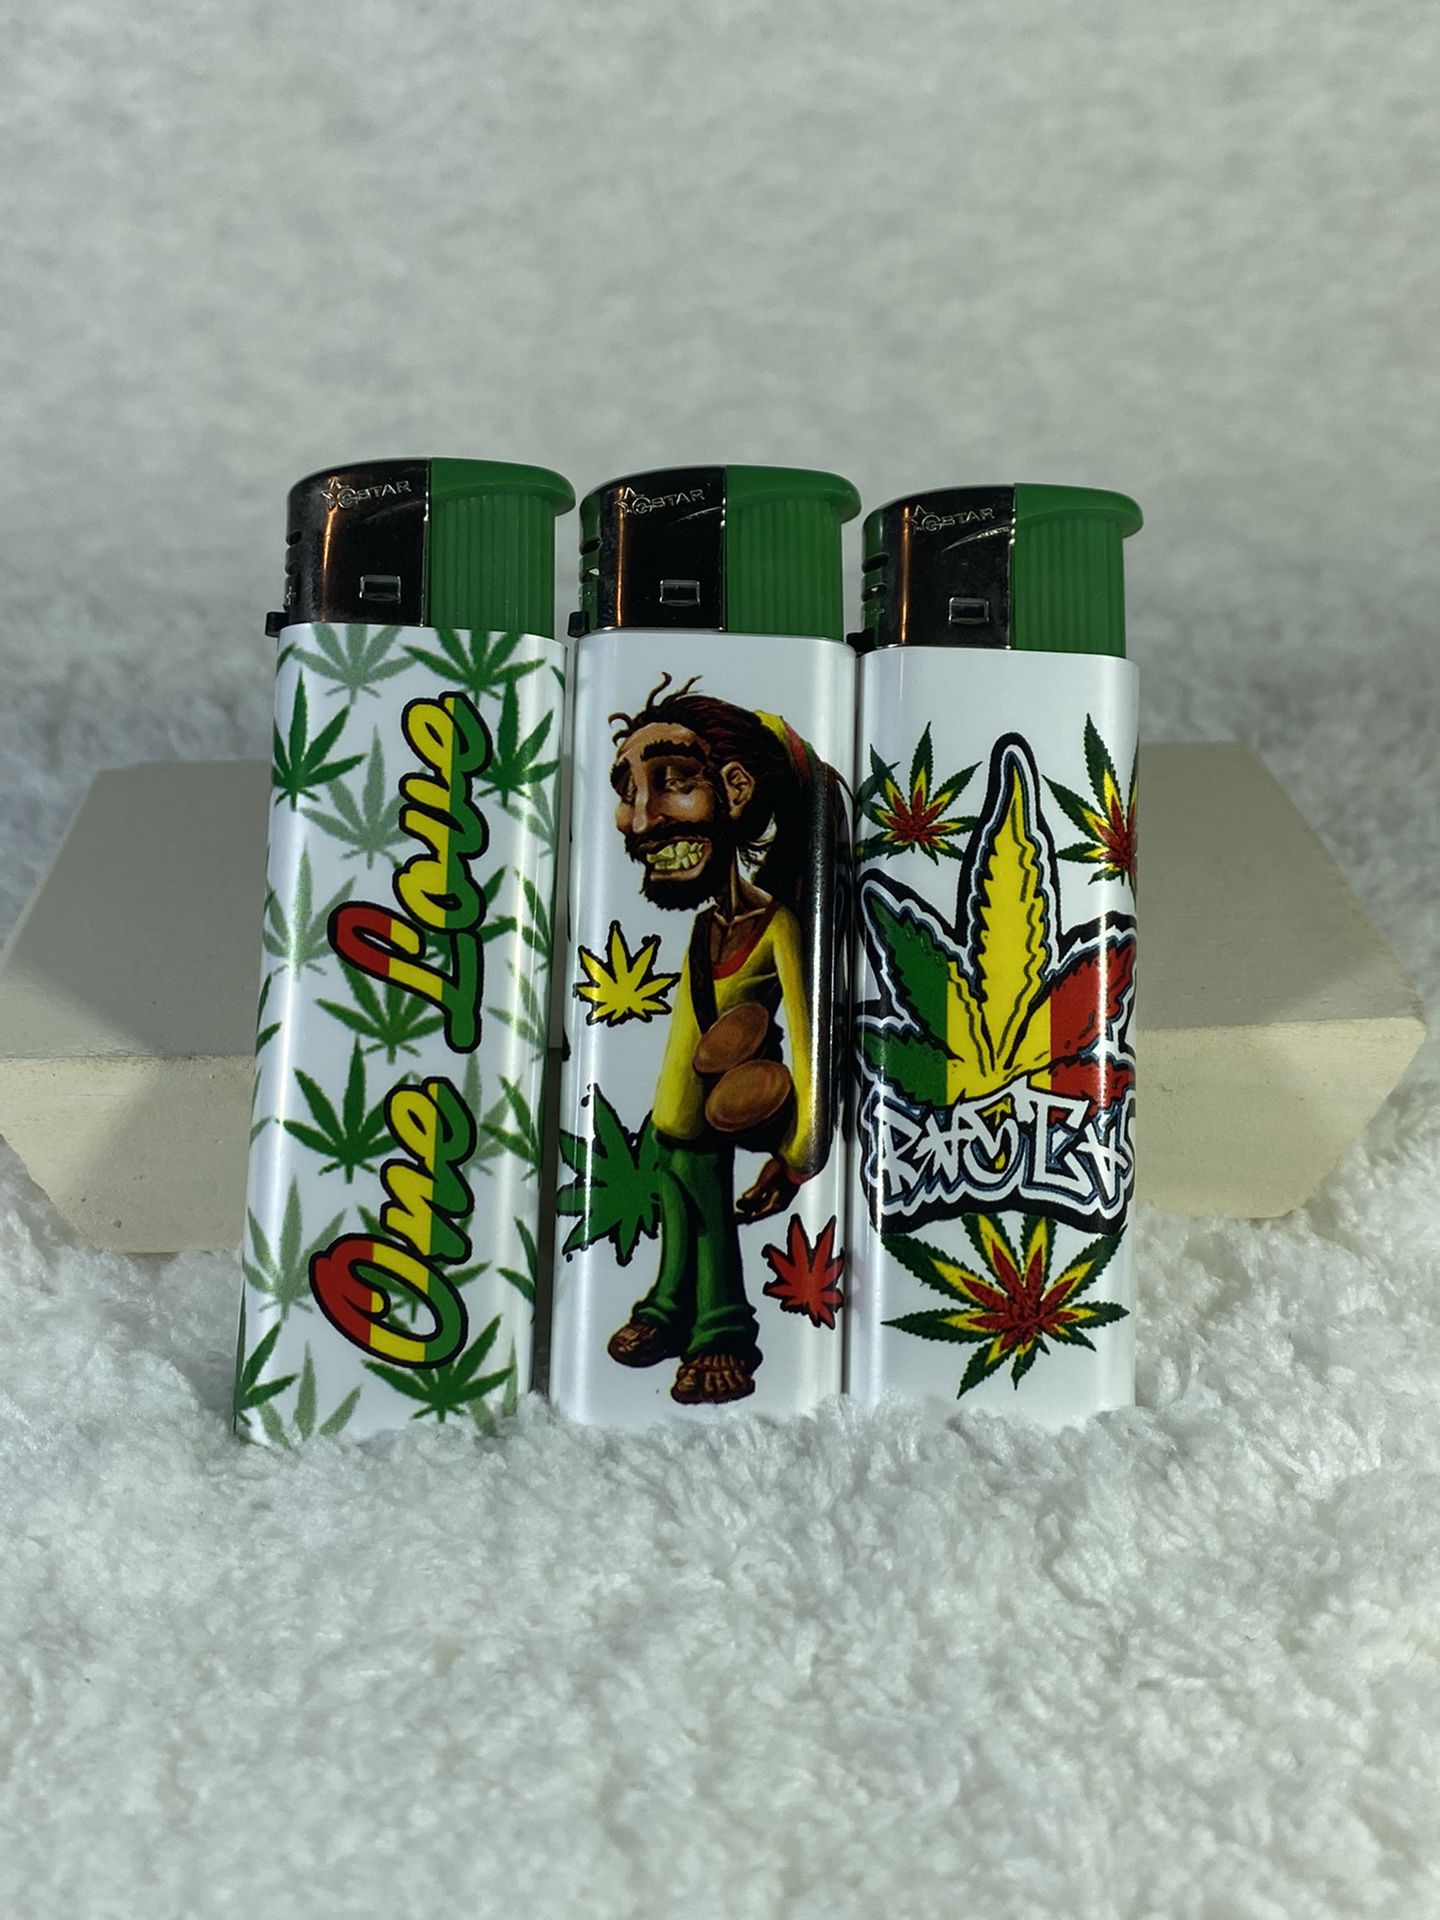 Hippie Inspired Lighter 3 For $6